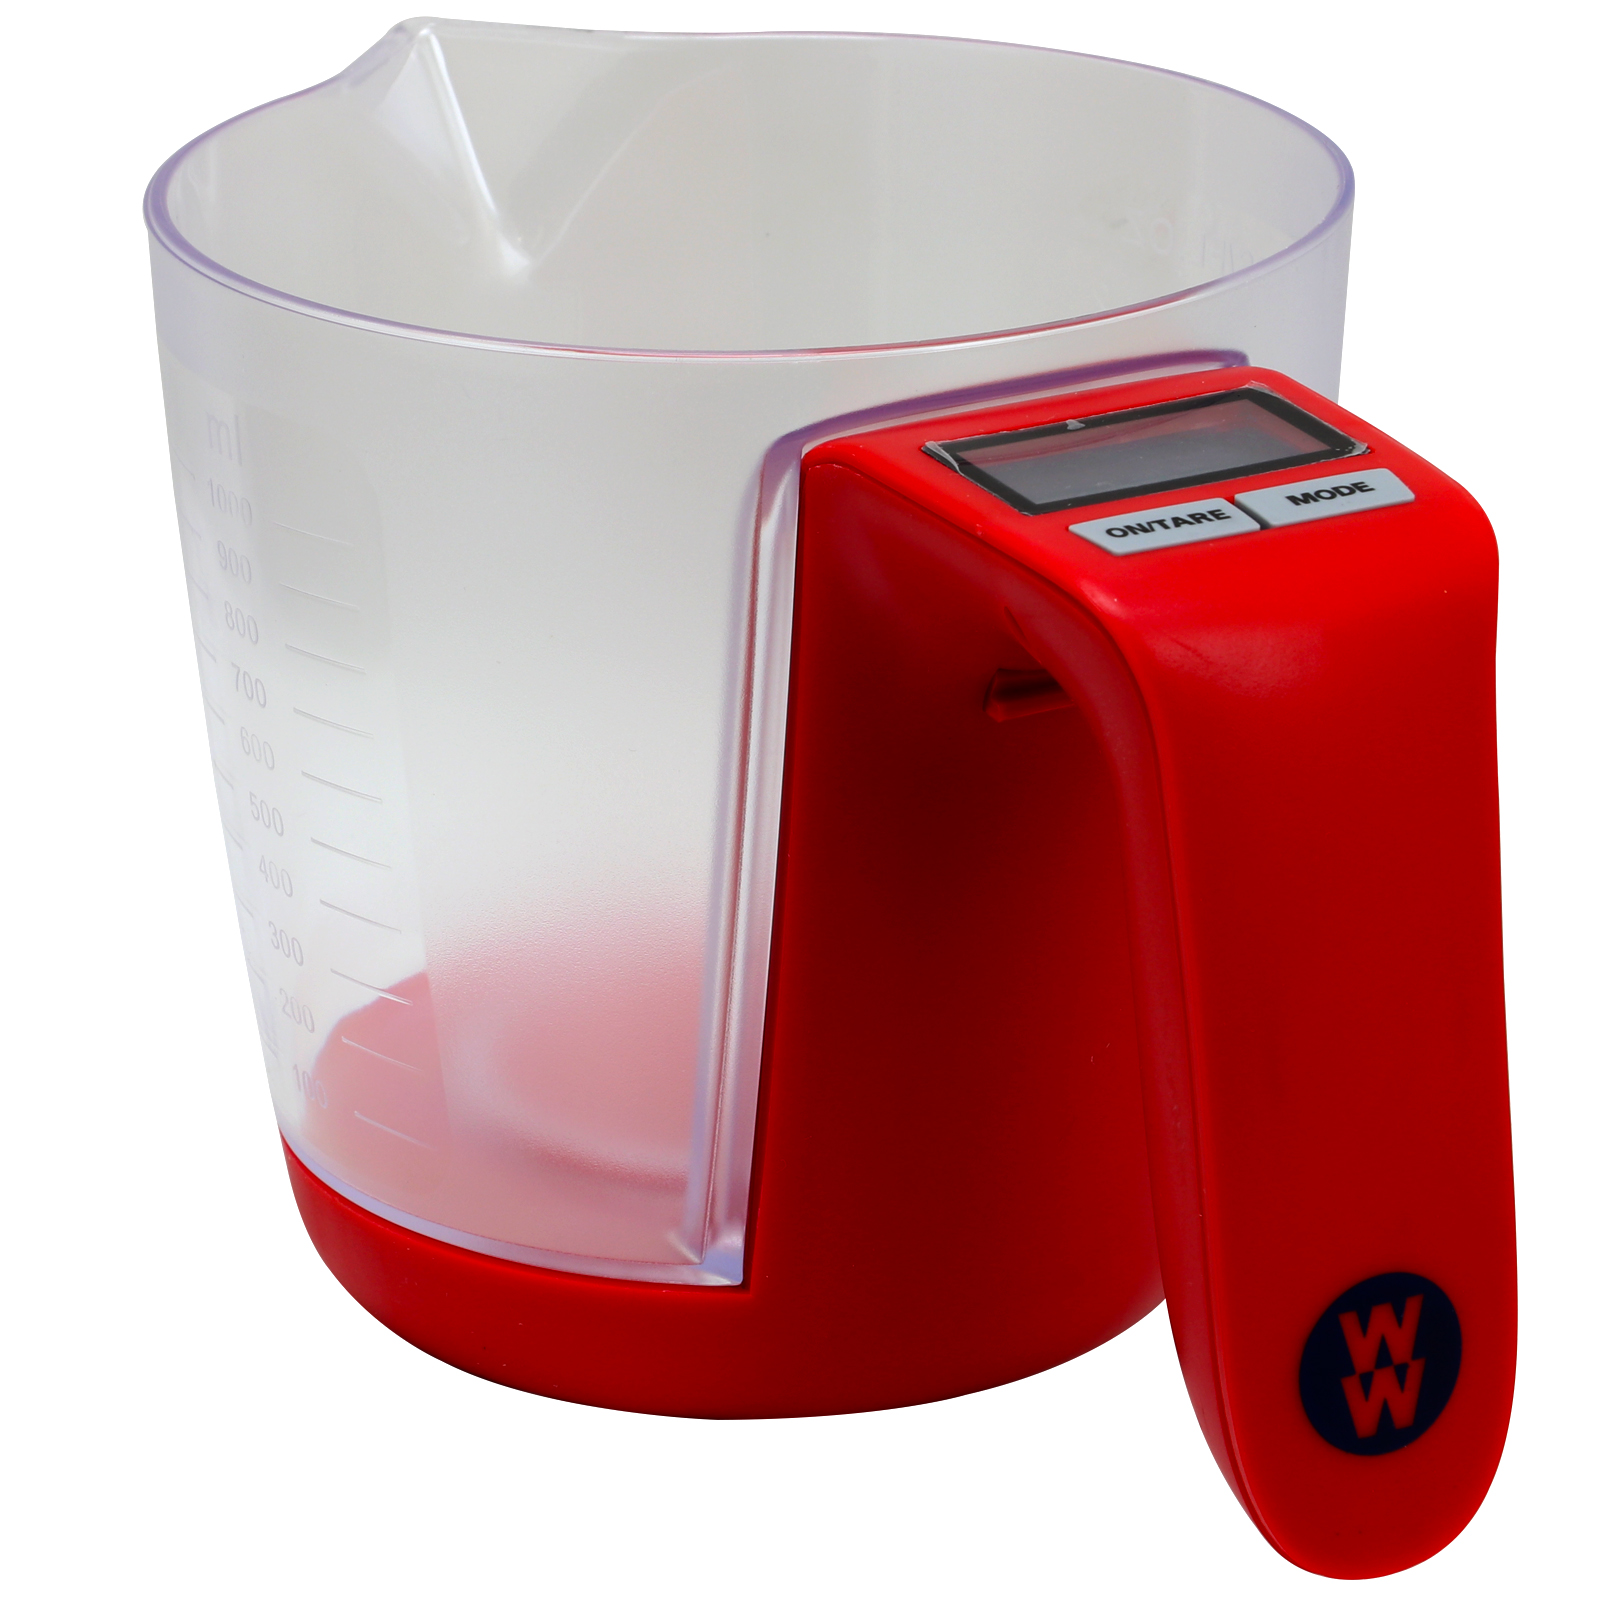 Weight Watchers Caulder 3.3 Quart Digital Measuring Cup